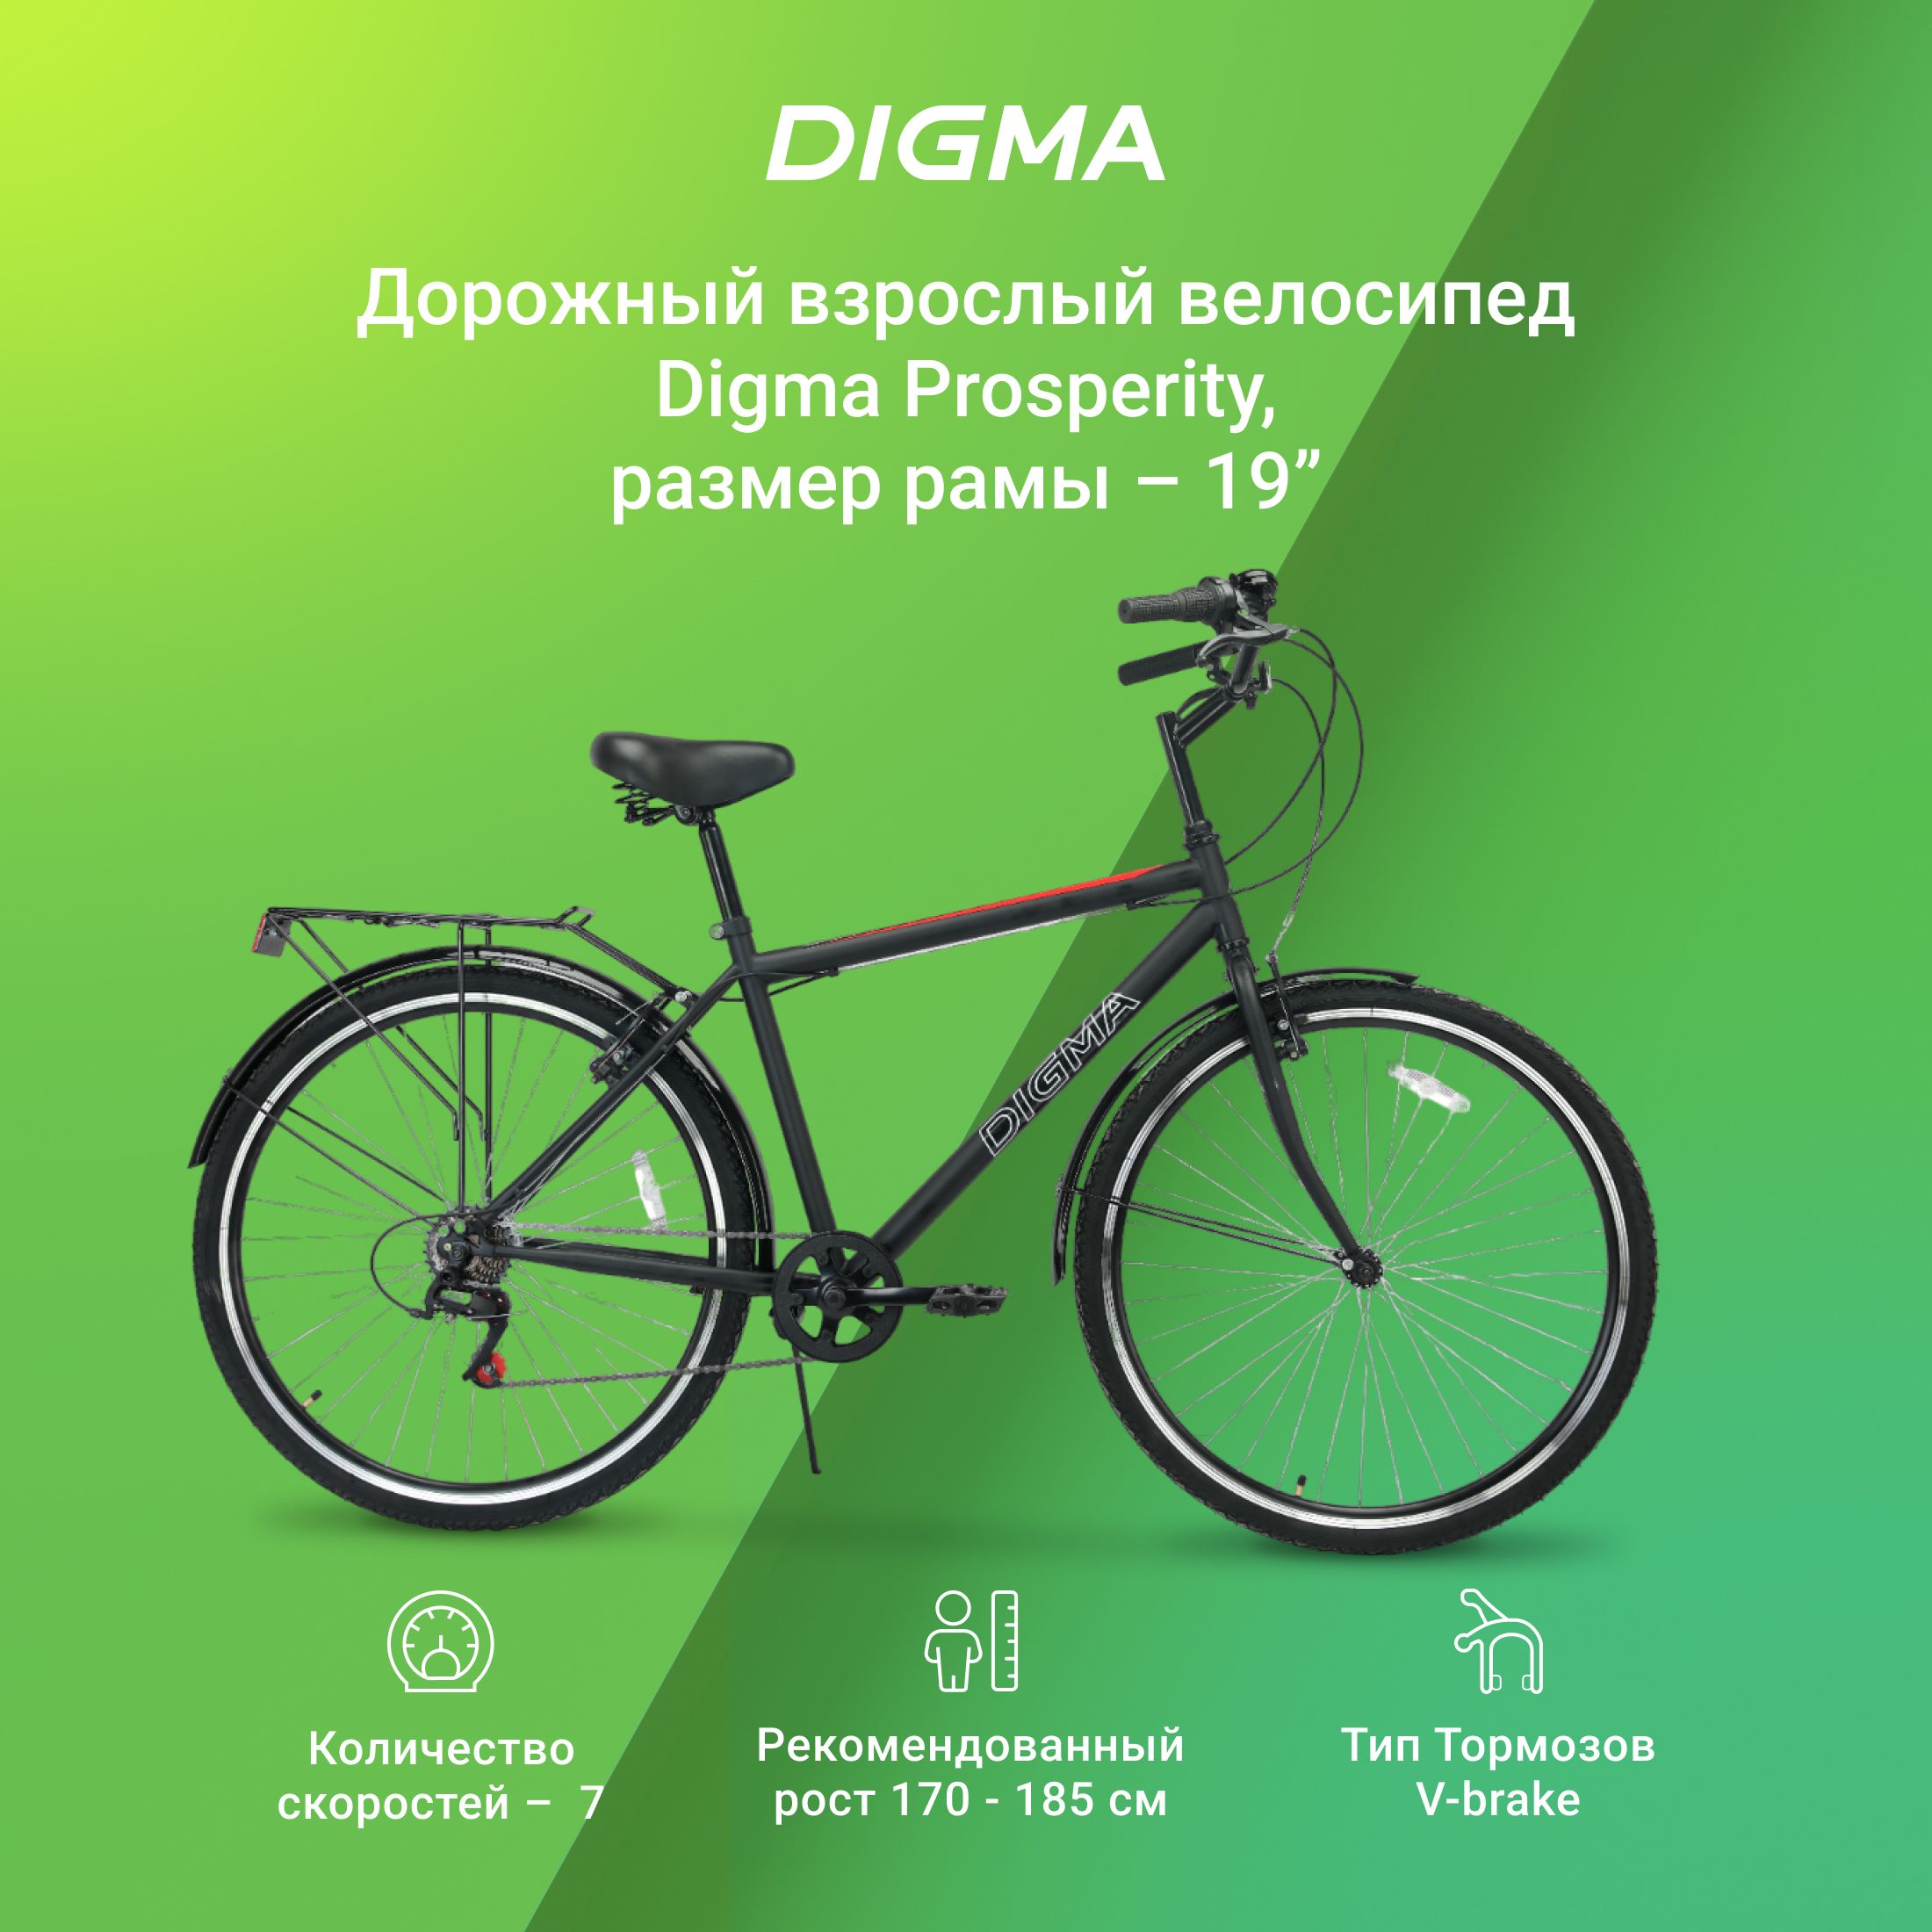 Городской, дорожный велосипед 28 дюймов, высокая рама, 7 скоростей, регулировка руля по высоте, Digma Prosperity